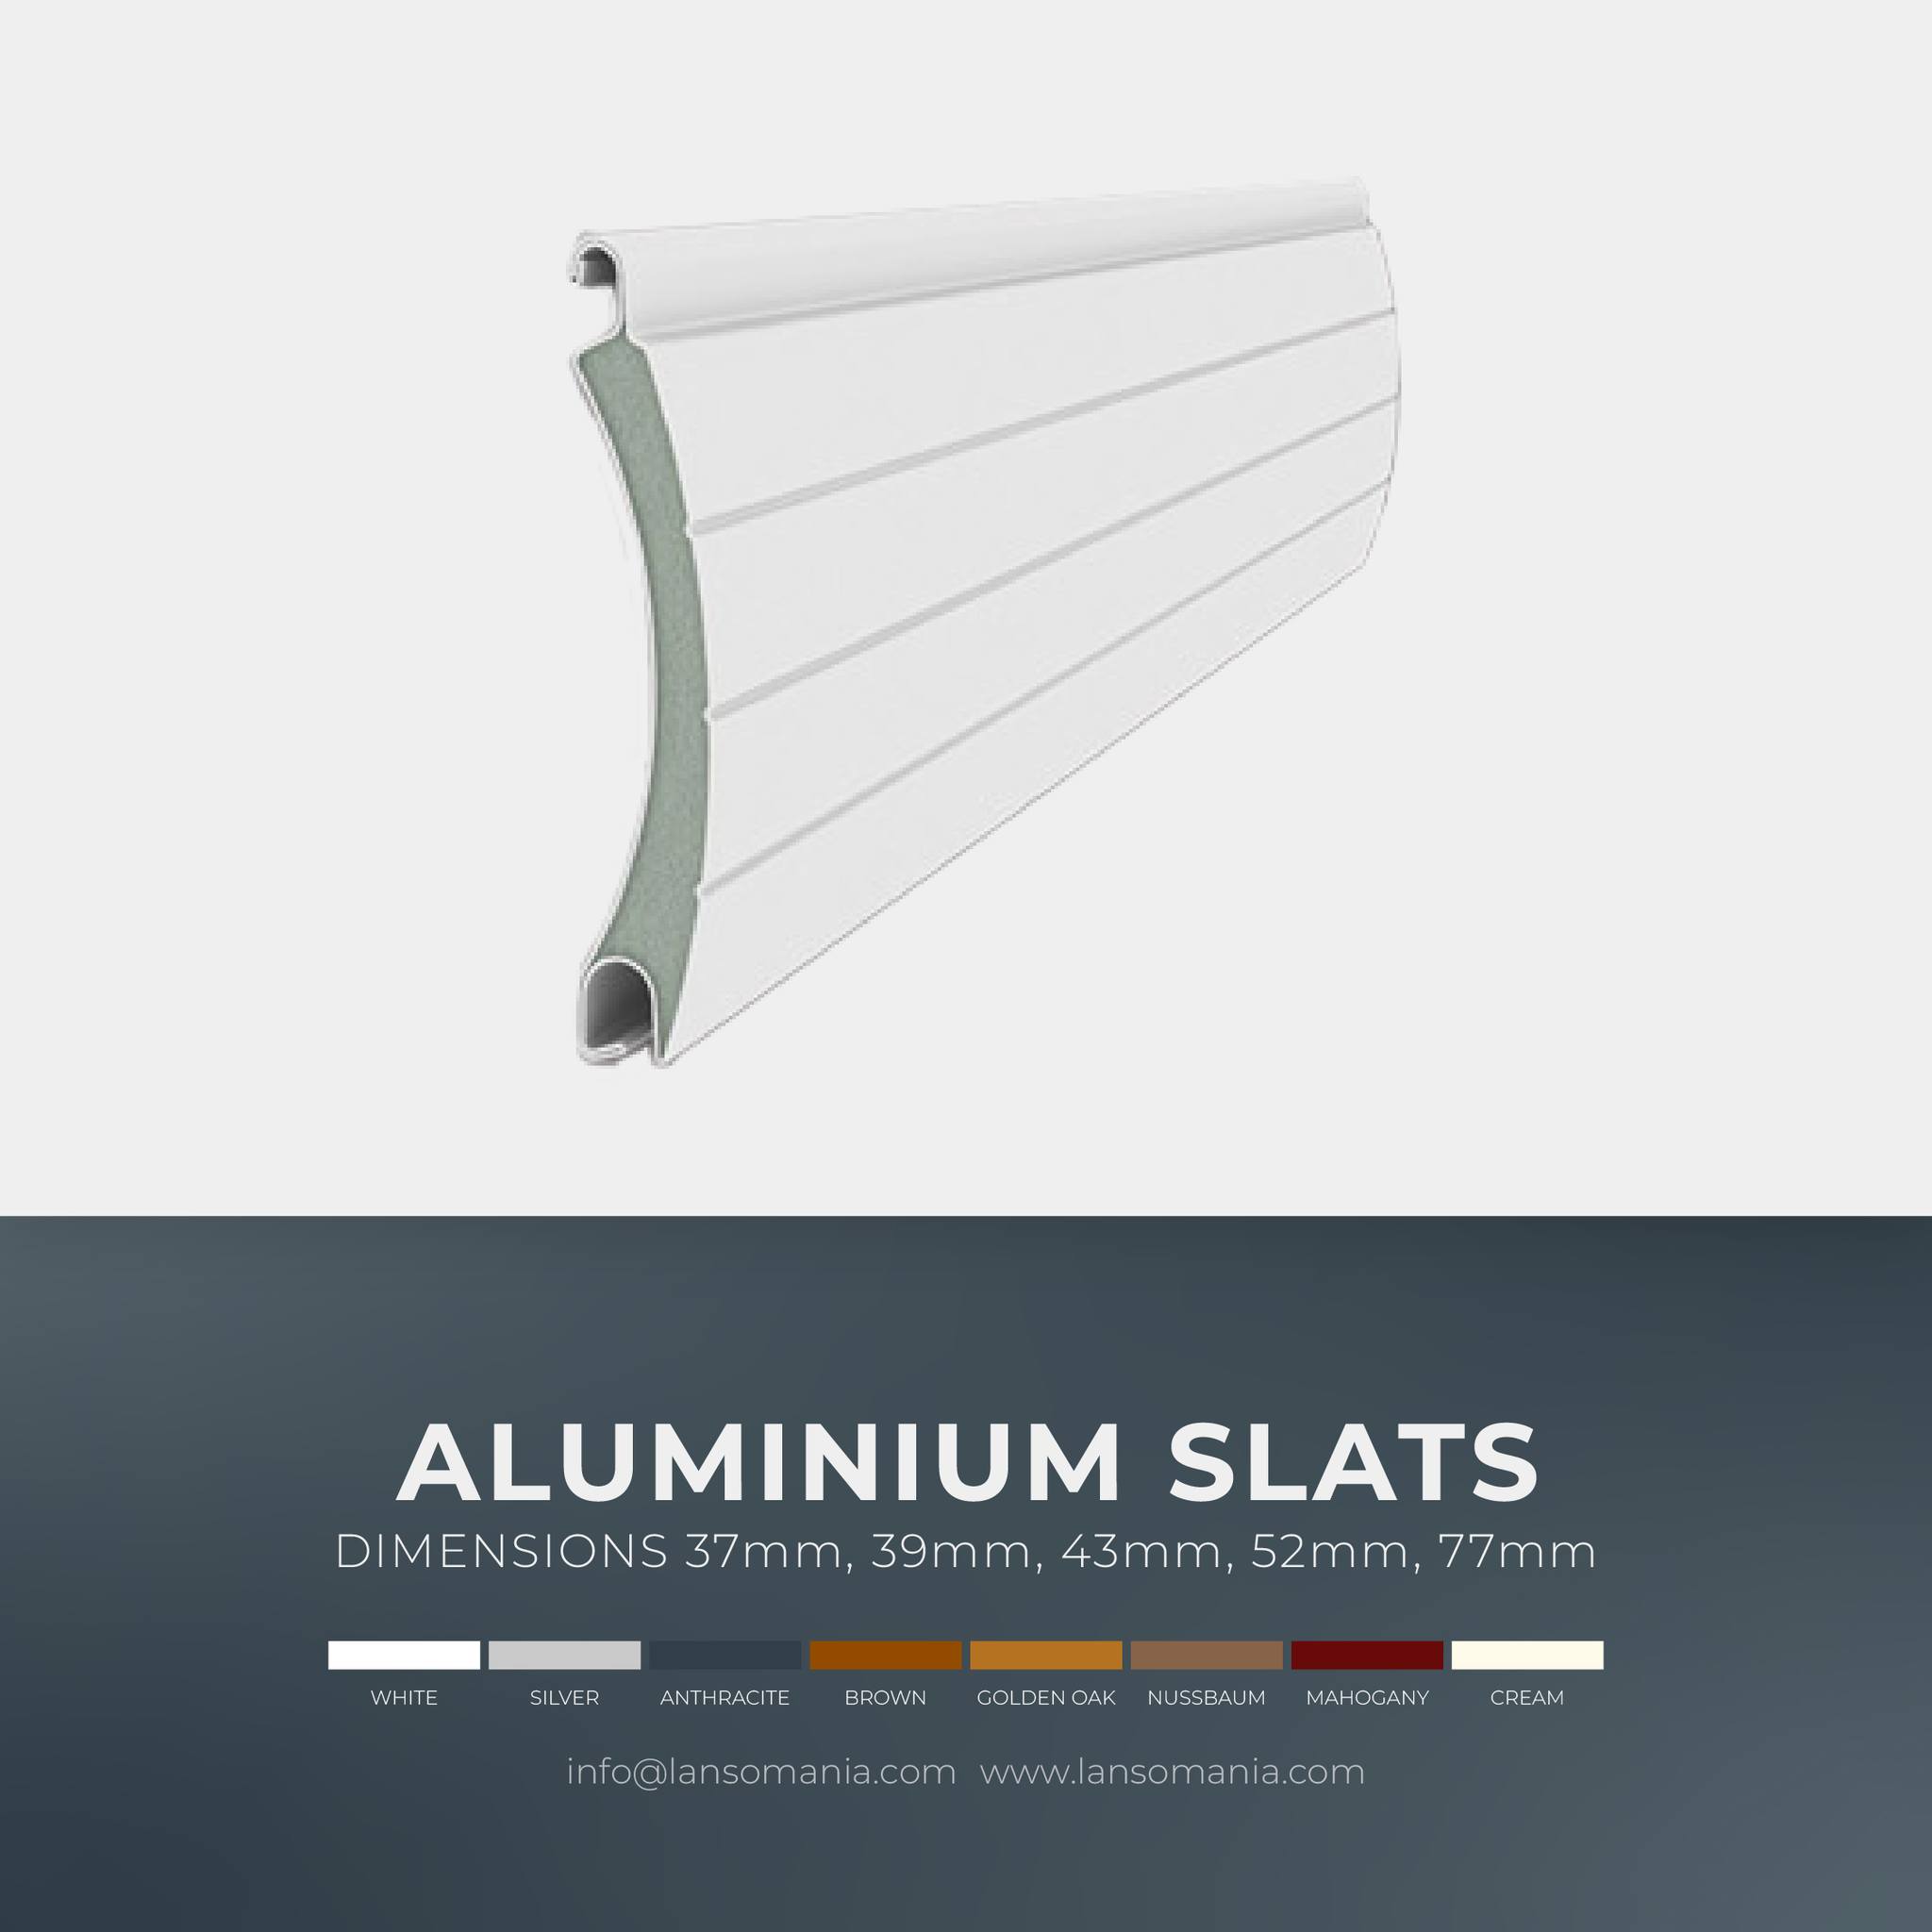 Aluminium slats